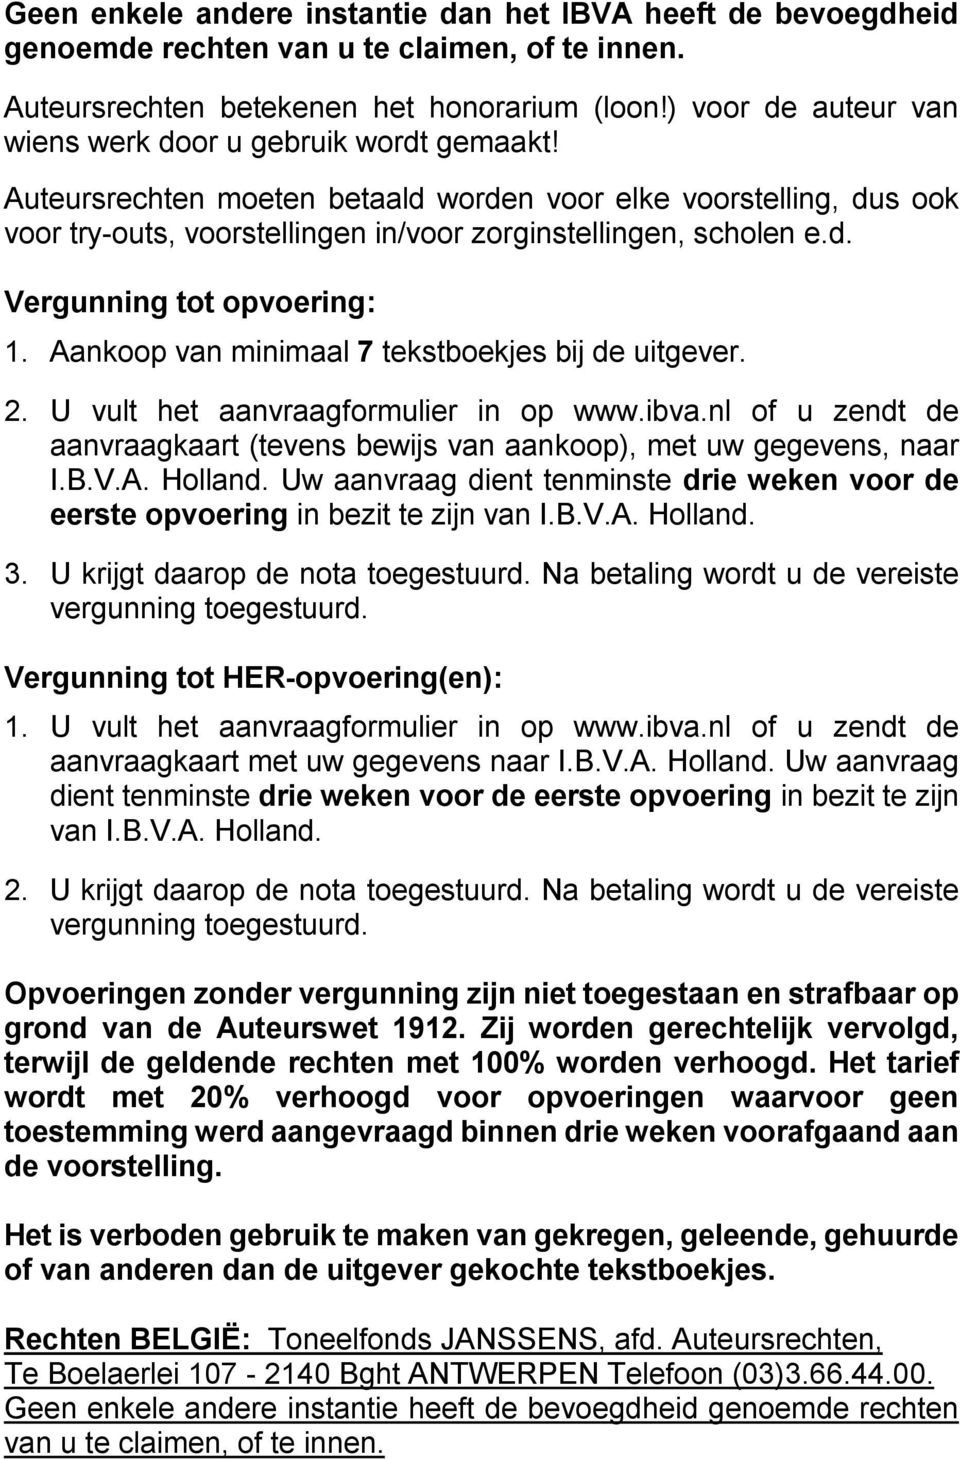 Aankoop van minimaal 7 tekstboekjes bij de uitgever. 2. U vult het aanvraagformulier in op www.ibva.nl of u zendt de aanvraagkaart (tevens bewijs van aankoop), met uw gegevens, naar I.B.V.A. Holland.